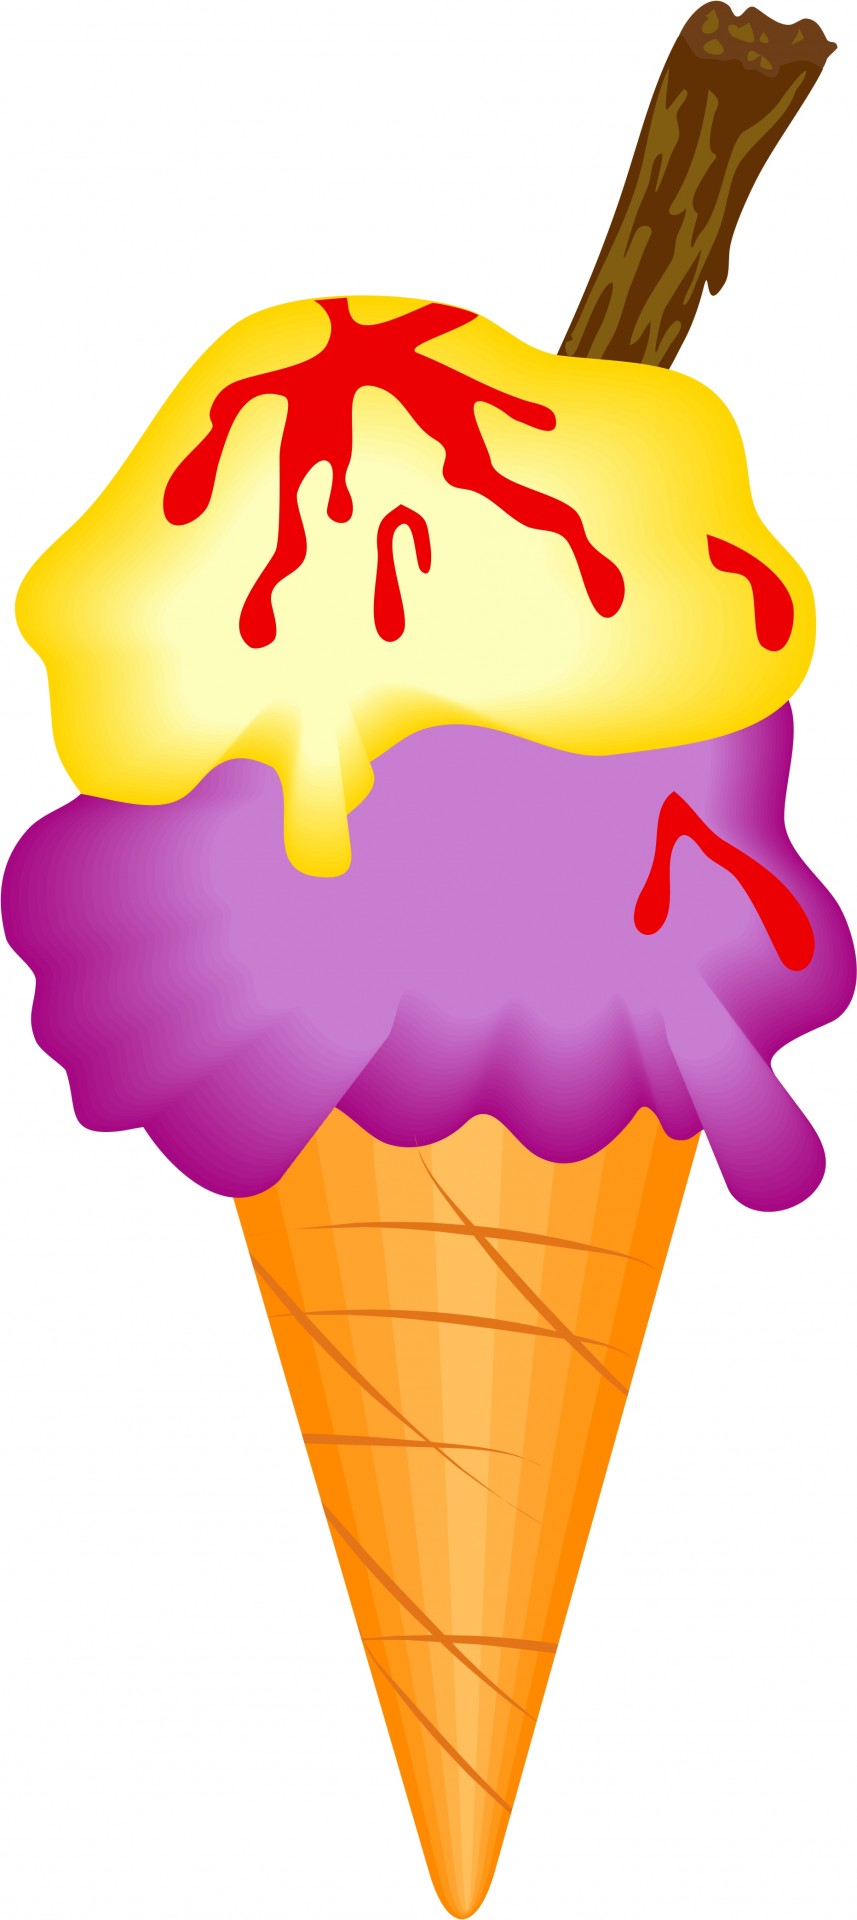 アイスクリームのイラスト 無料画像 Public Domain Pictures